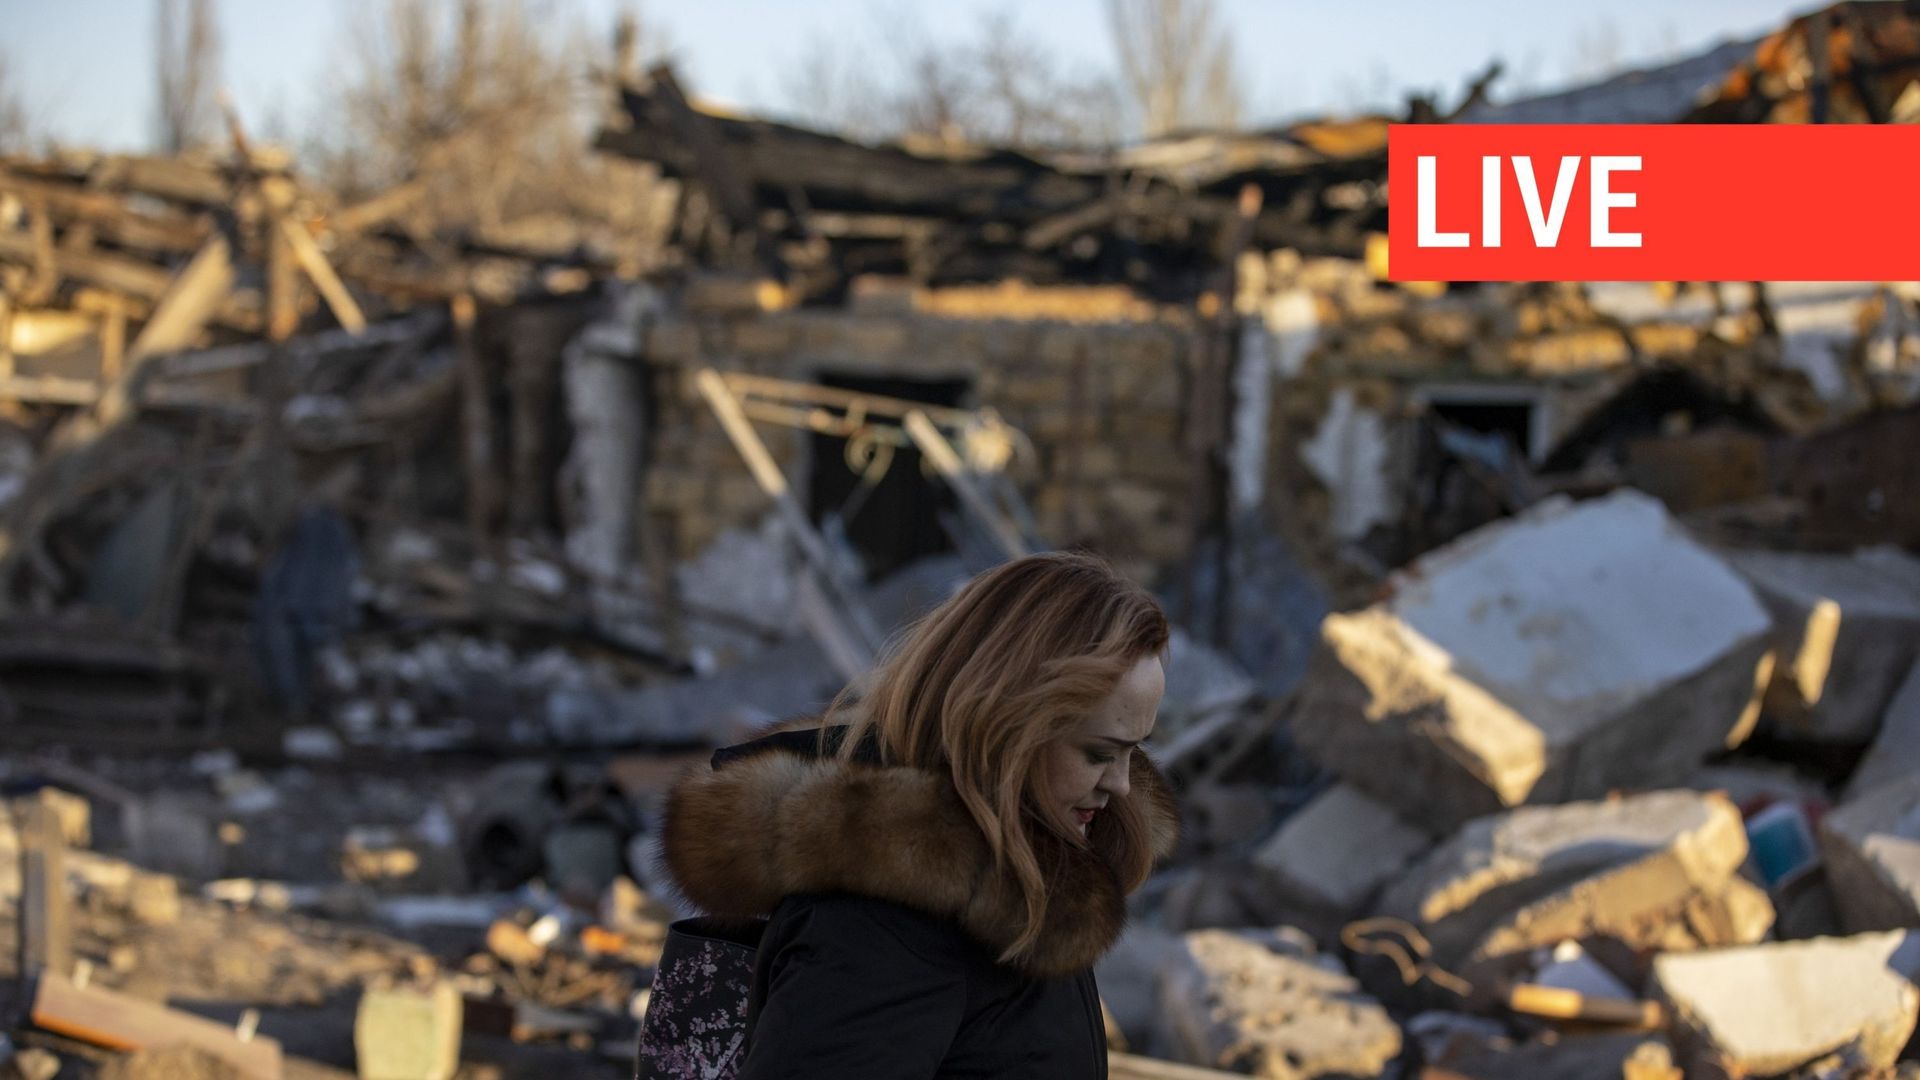 Des civils sont vus au milieu des débris d’une colonie détruite alors que la vie quotidienne se poursuit dans des conditions difficiles pendant la guerre Russie-Ukraine, le 6 décembre 2022, à Dnipro, en Ukraine.